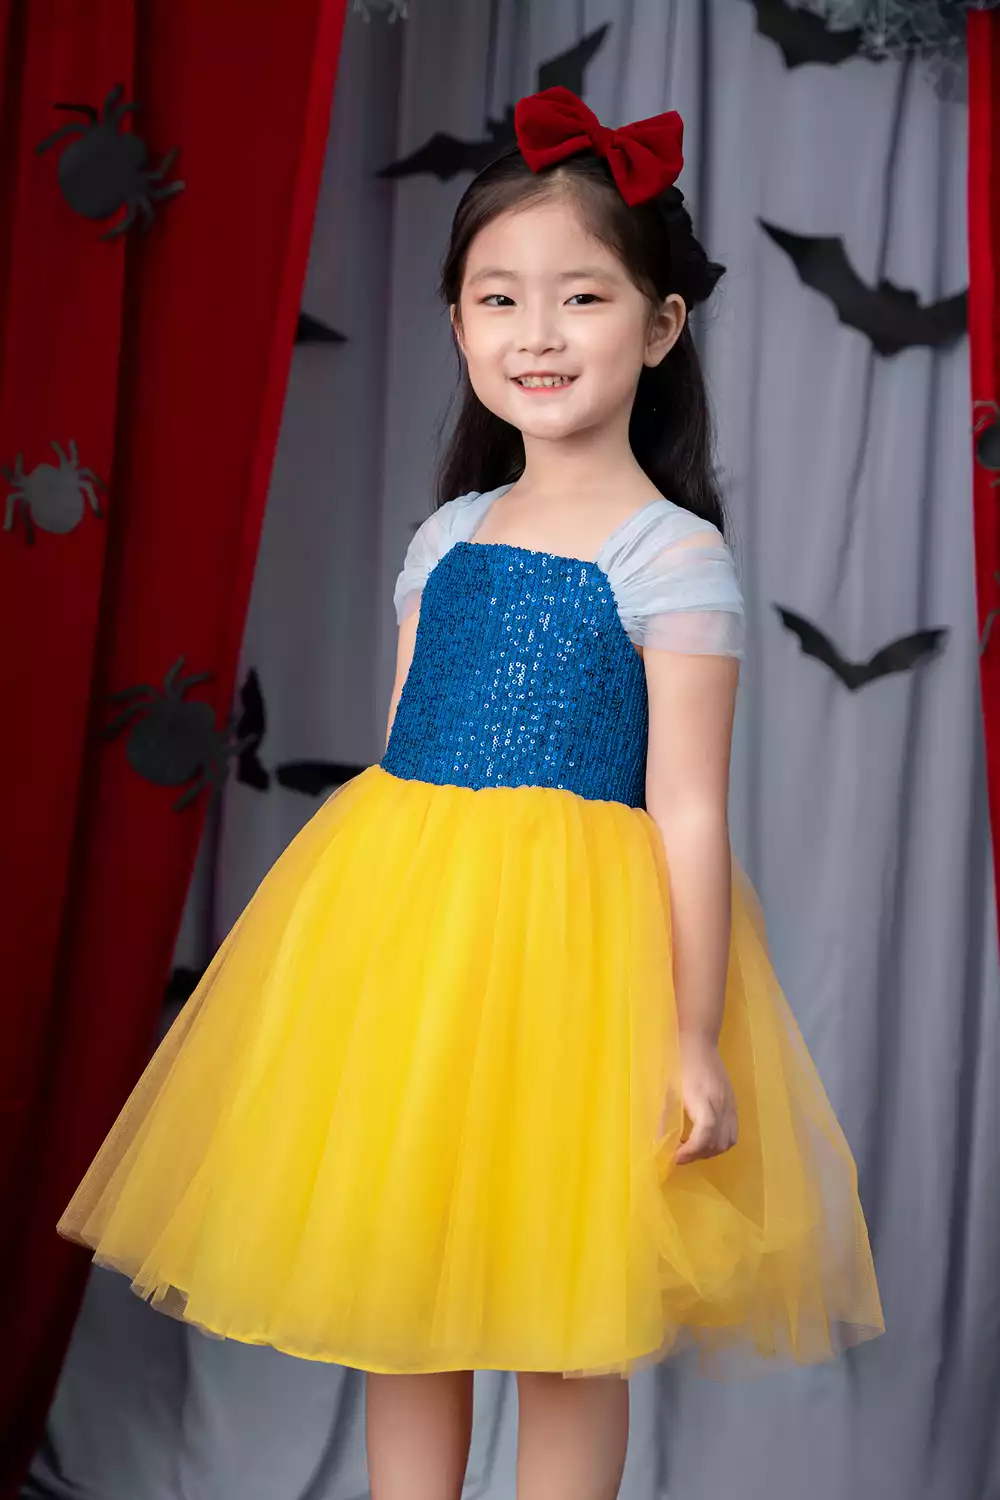 Draw Snow White Princess Dress  Dạy Vẽ Váy Công Chúa Bạch Tuyết  An Pi TV  Coloring  YouTube